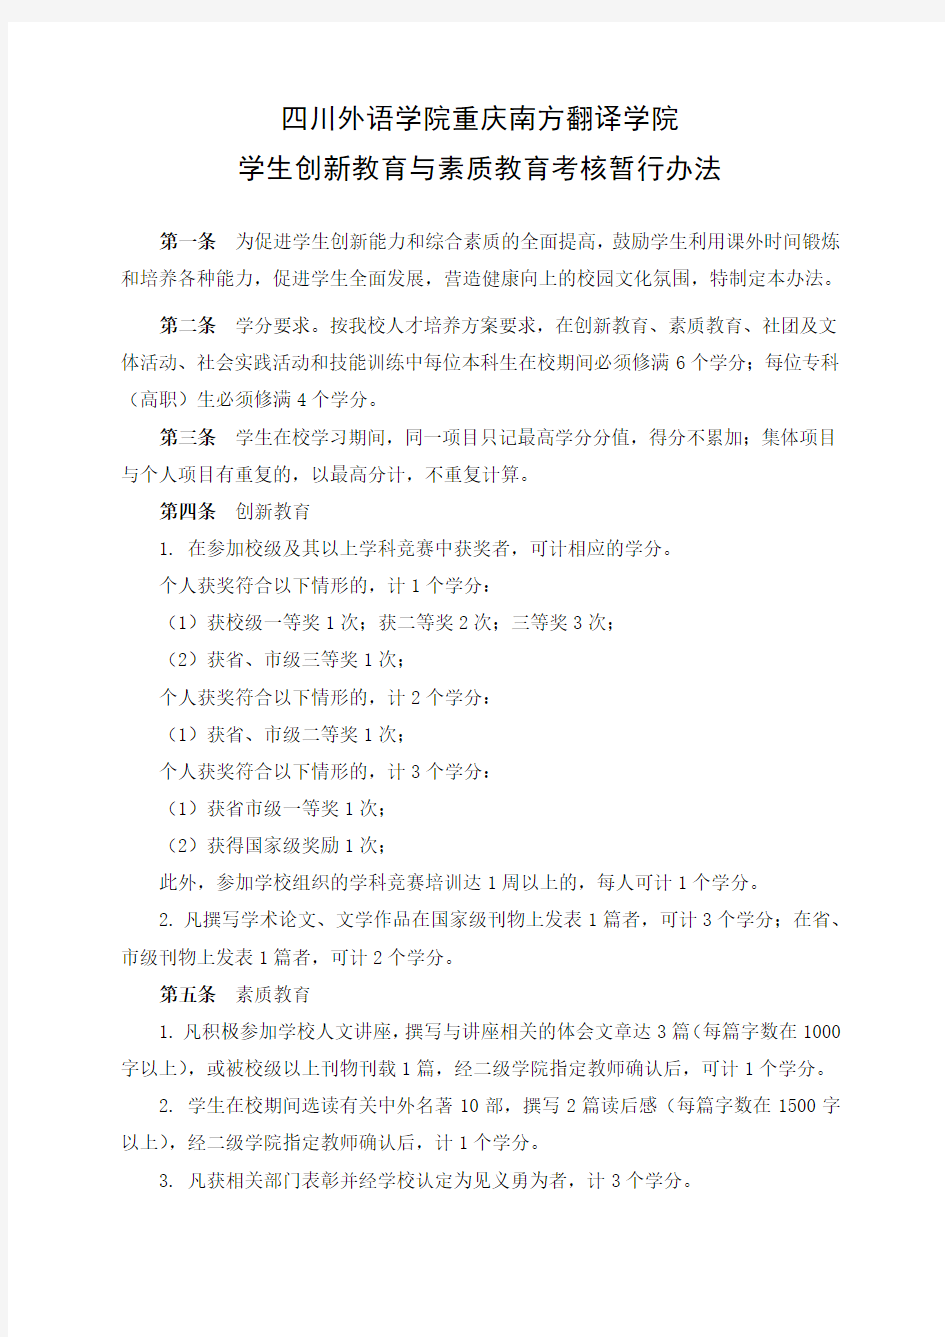 四川外语学院重庆南方翻译学院学生创新教育与素质教育考核暂行办法